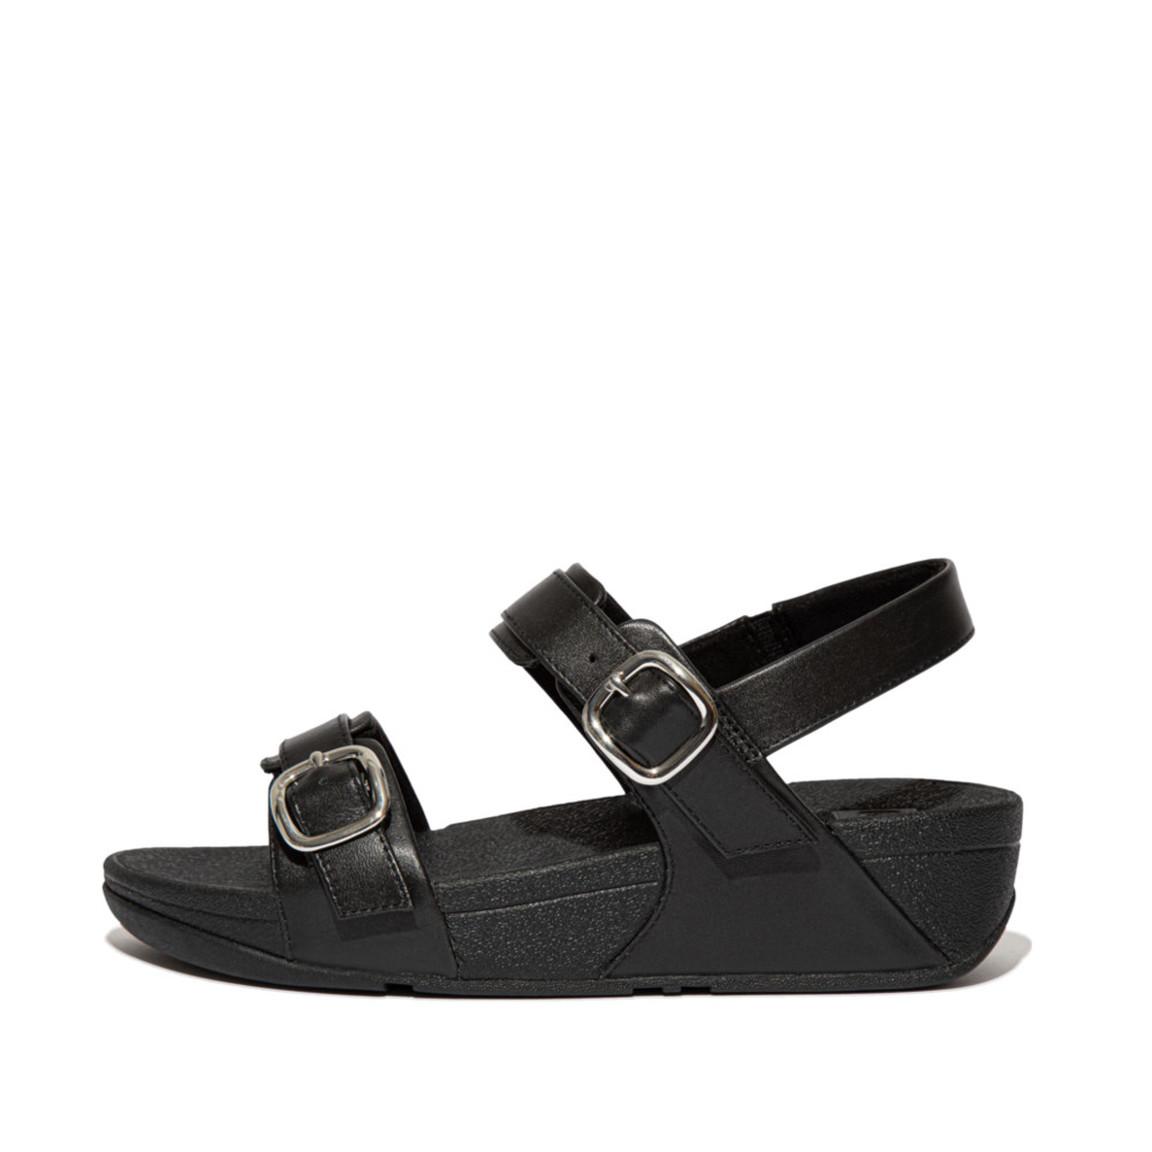 Adjustable Leather Back-Strap Sandals